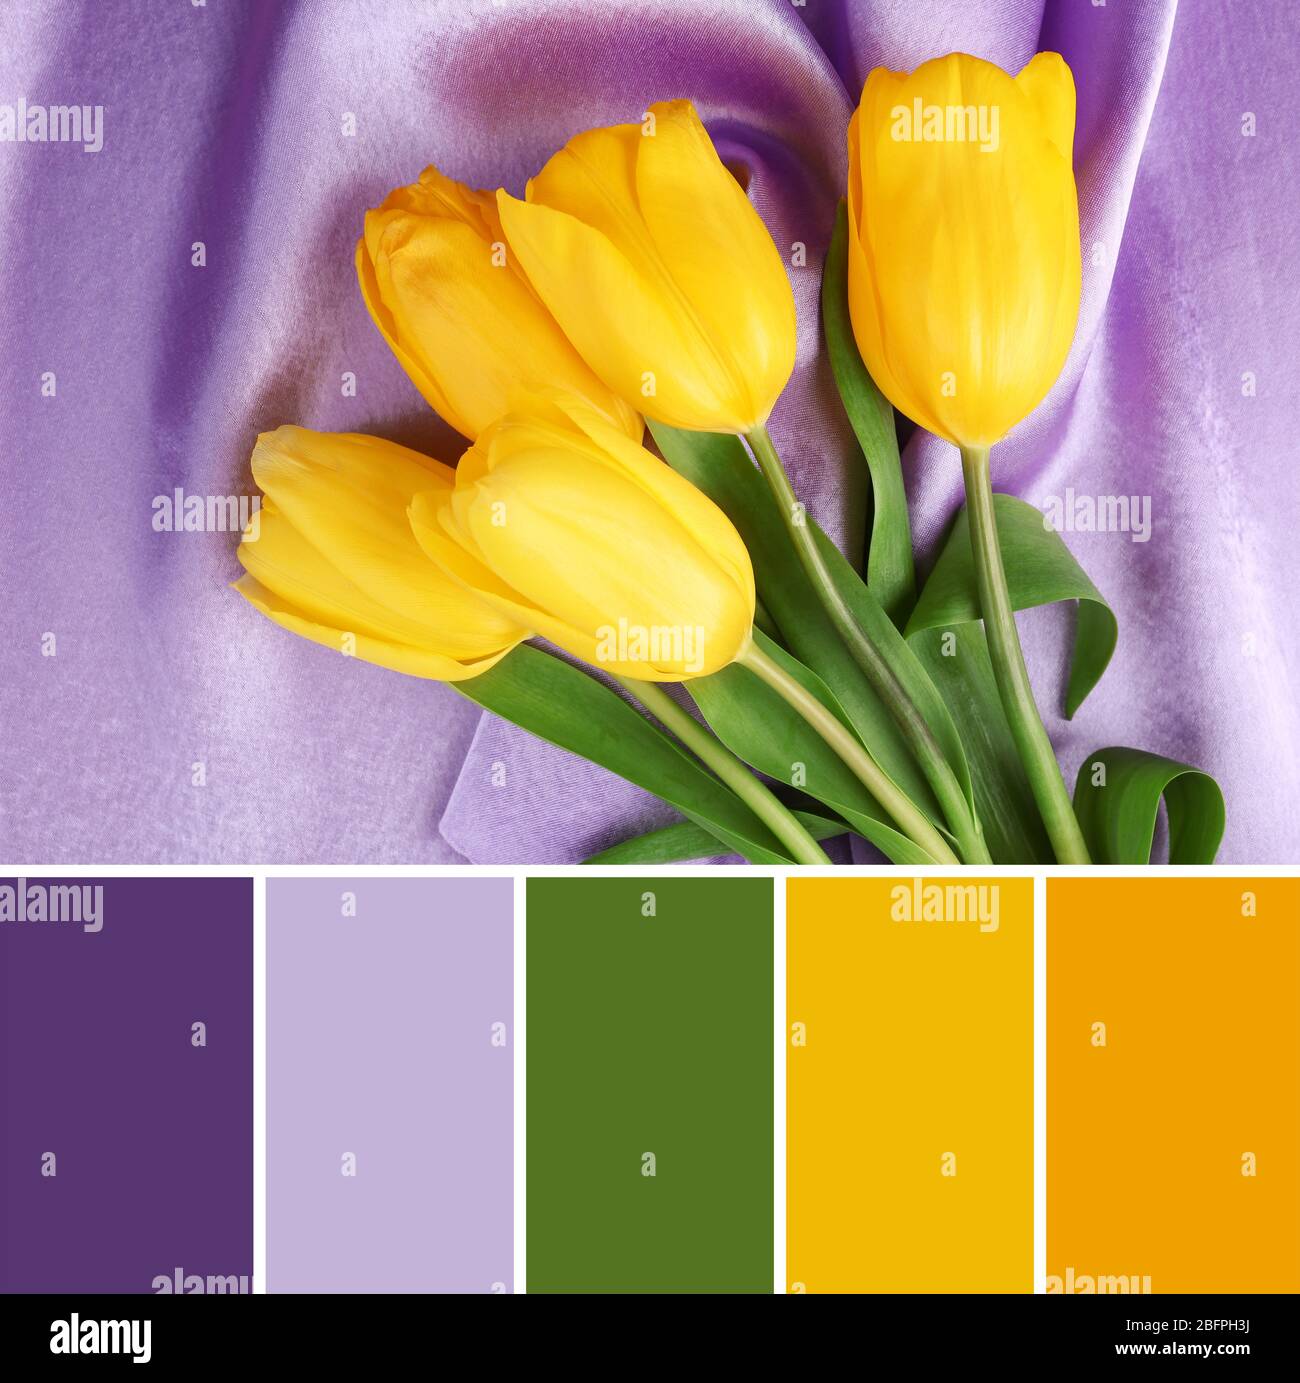 Hãy để màu vàng rực rỡ của hoa tulip phối hợp cùng chỉ lilac tinh tế tạo nên một bức tranh tuyệt đẹp. Hãy xem hình ảnh để thấy được sự hòa hợp mà màu sắc và hình tượng tạo ra.